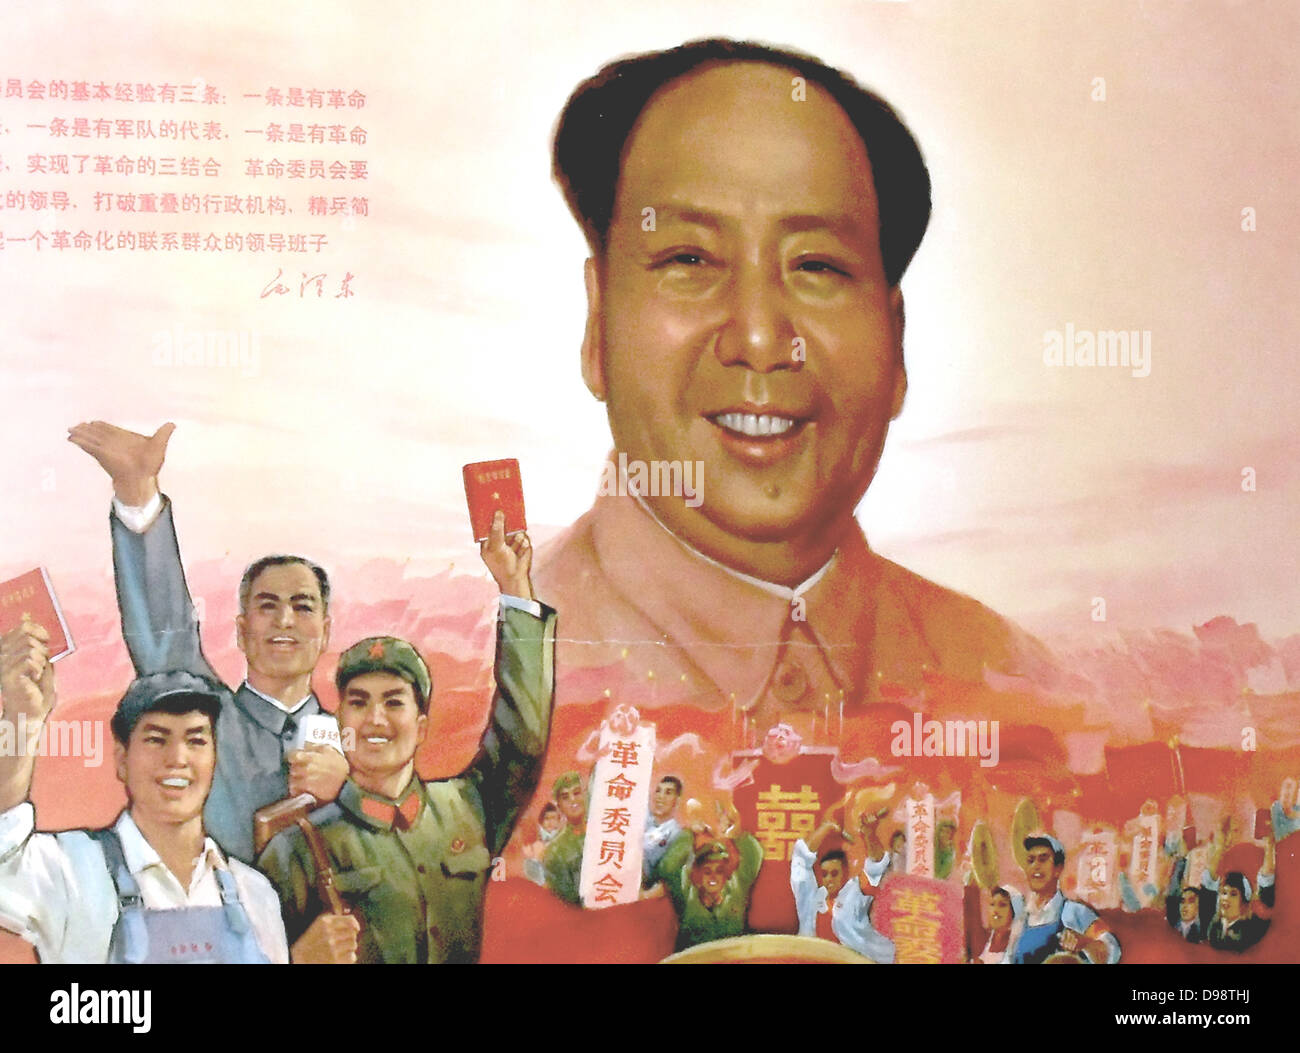 1968 Kulturrevolution, Chinesische Kommunistische Poster. Zeigt Arbeiter und Soldaten mit der "Gedanken des Vorsitzenden Mao Tse-tung (Mao Zedung). Mao's Gesicht ersetzt die Sonne. Der Slogan lautet "revolutionäre Komitees gut sind". Stockfoto